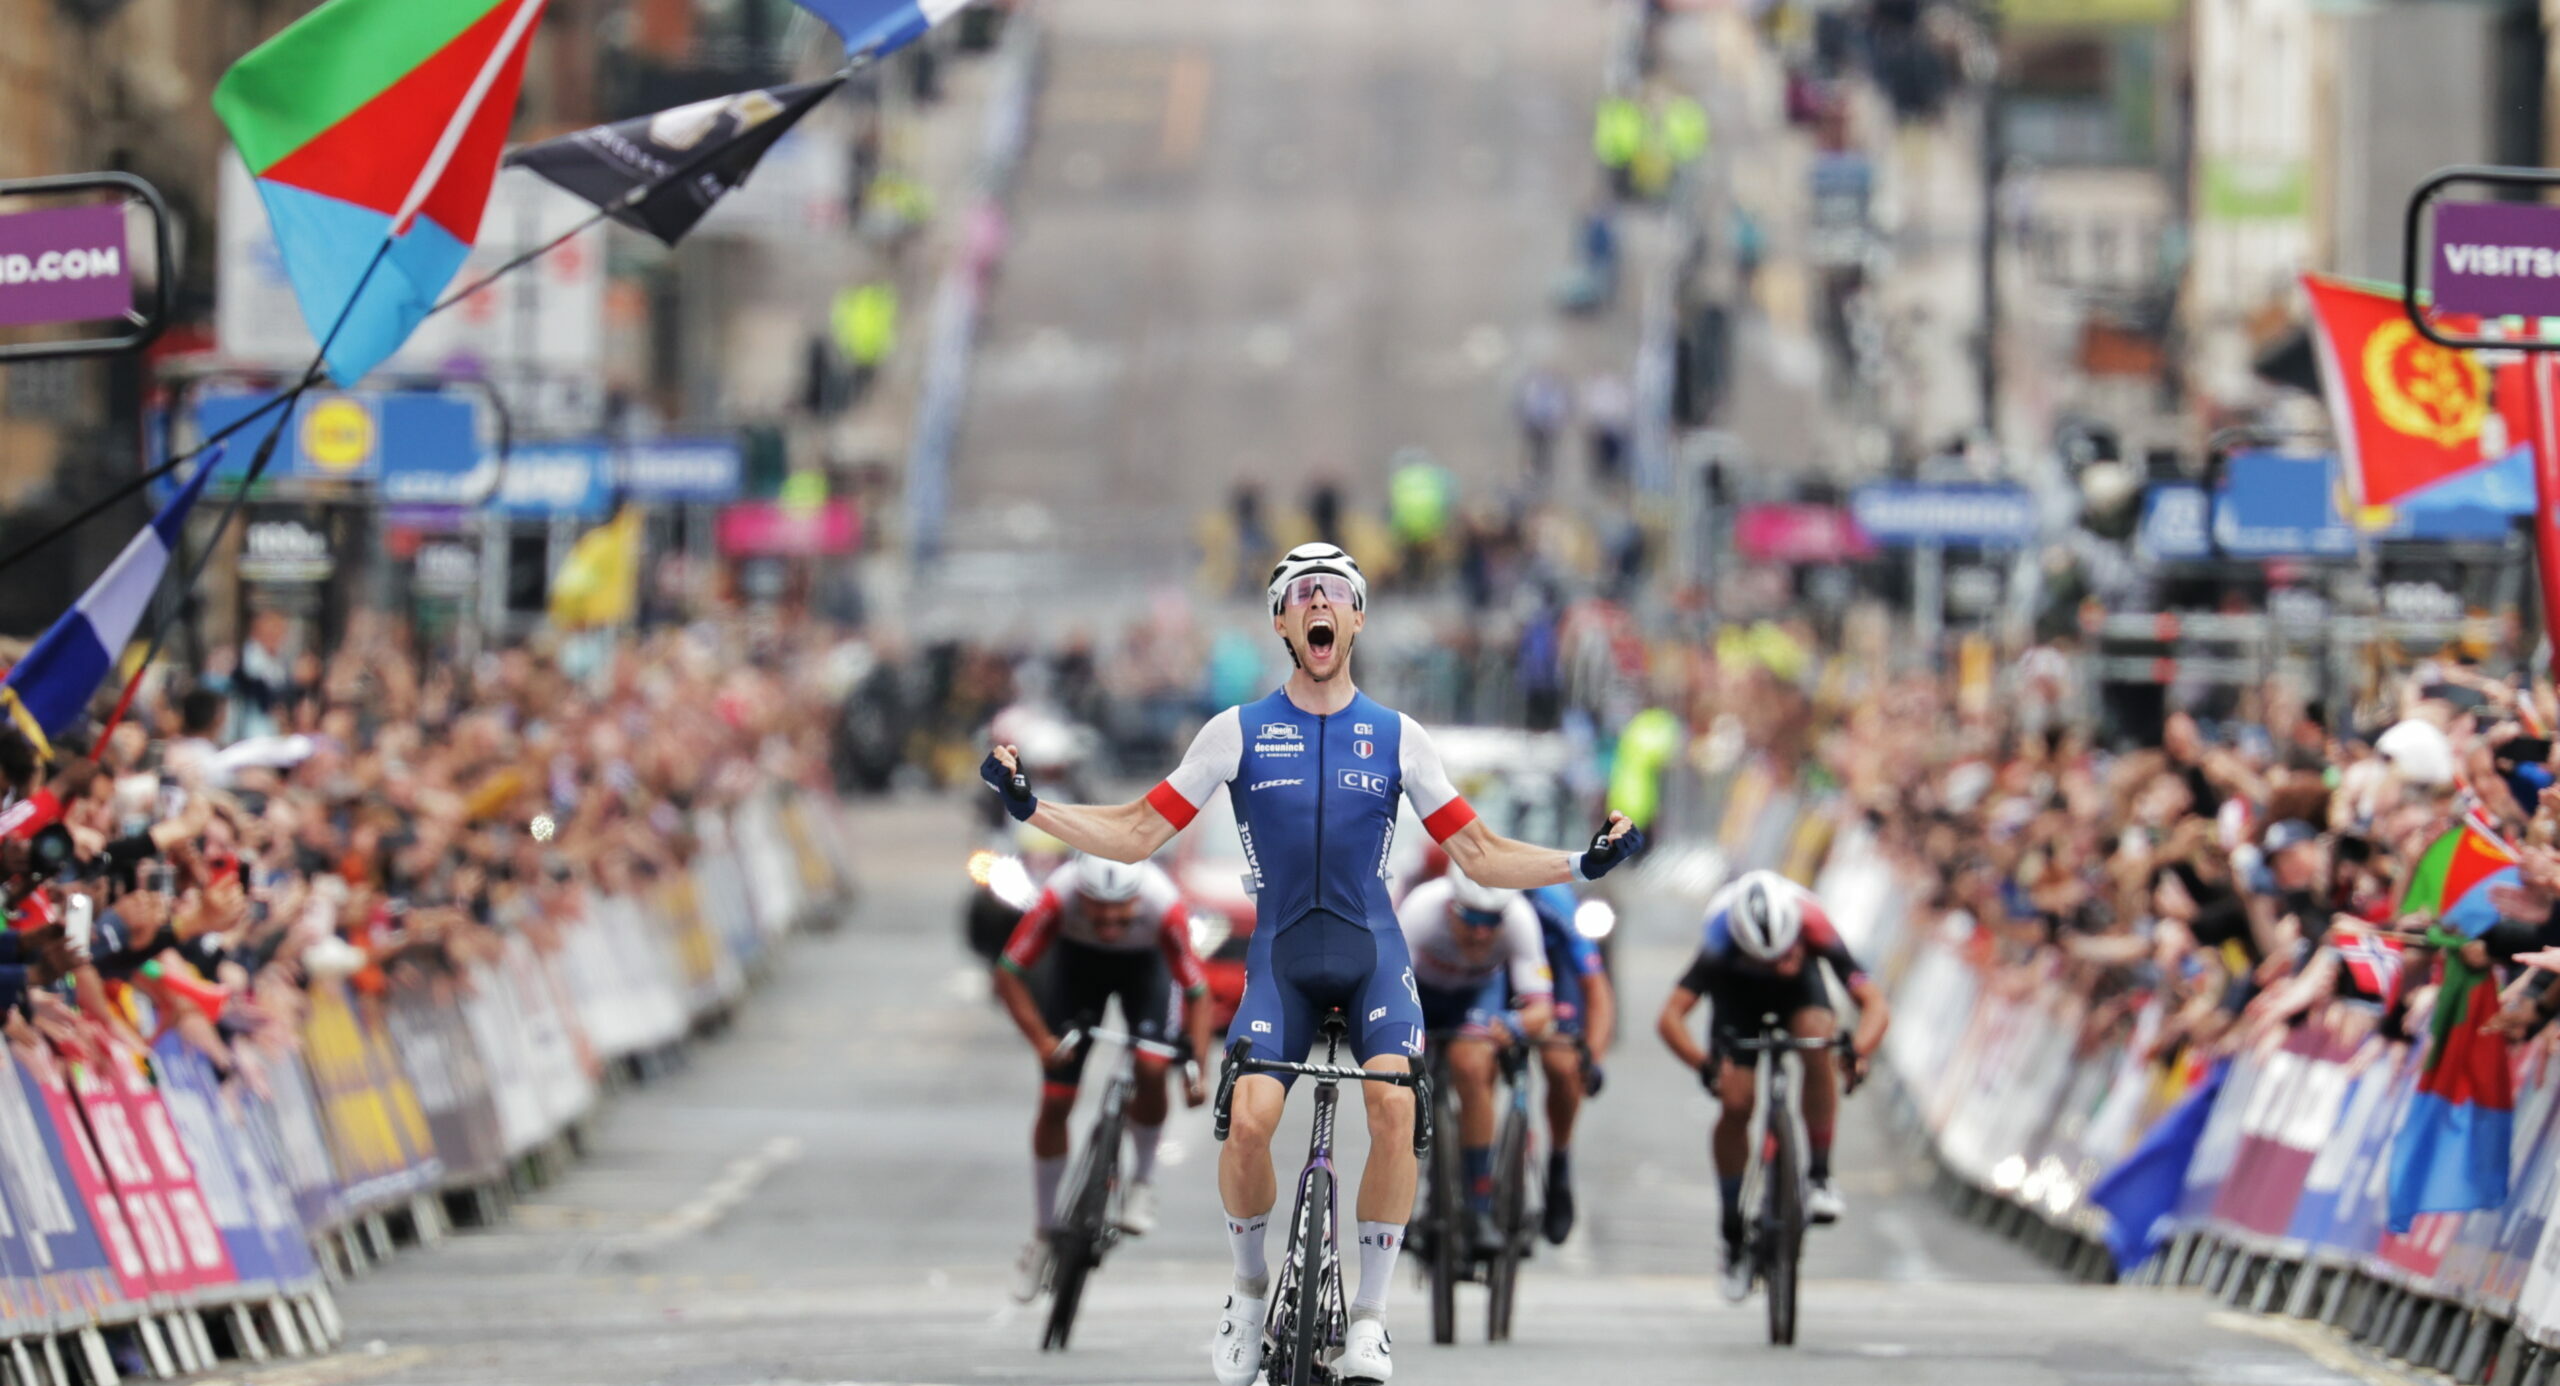 Аксель Лоранс стал чемпионом мира по велоспорту 2023 года среди андеров